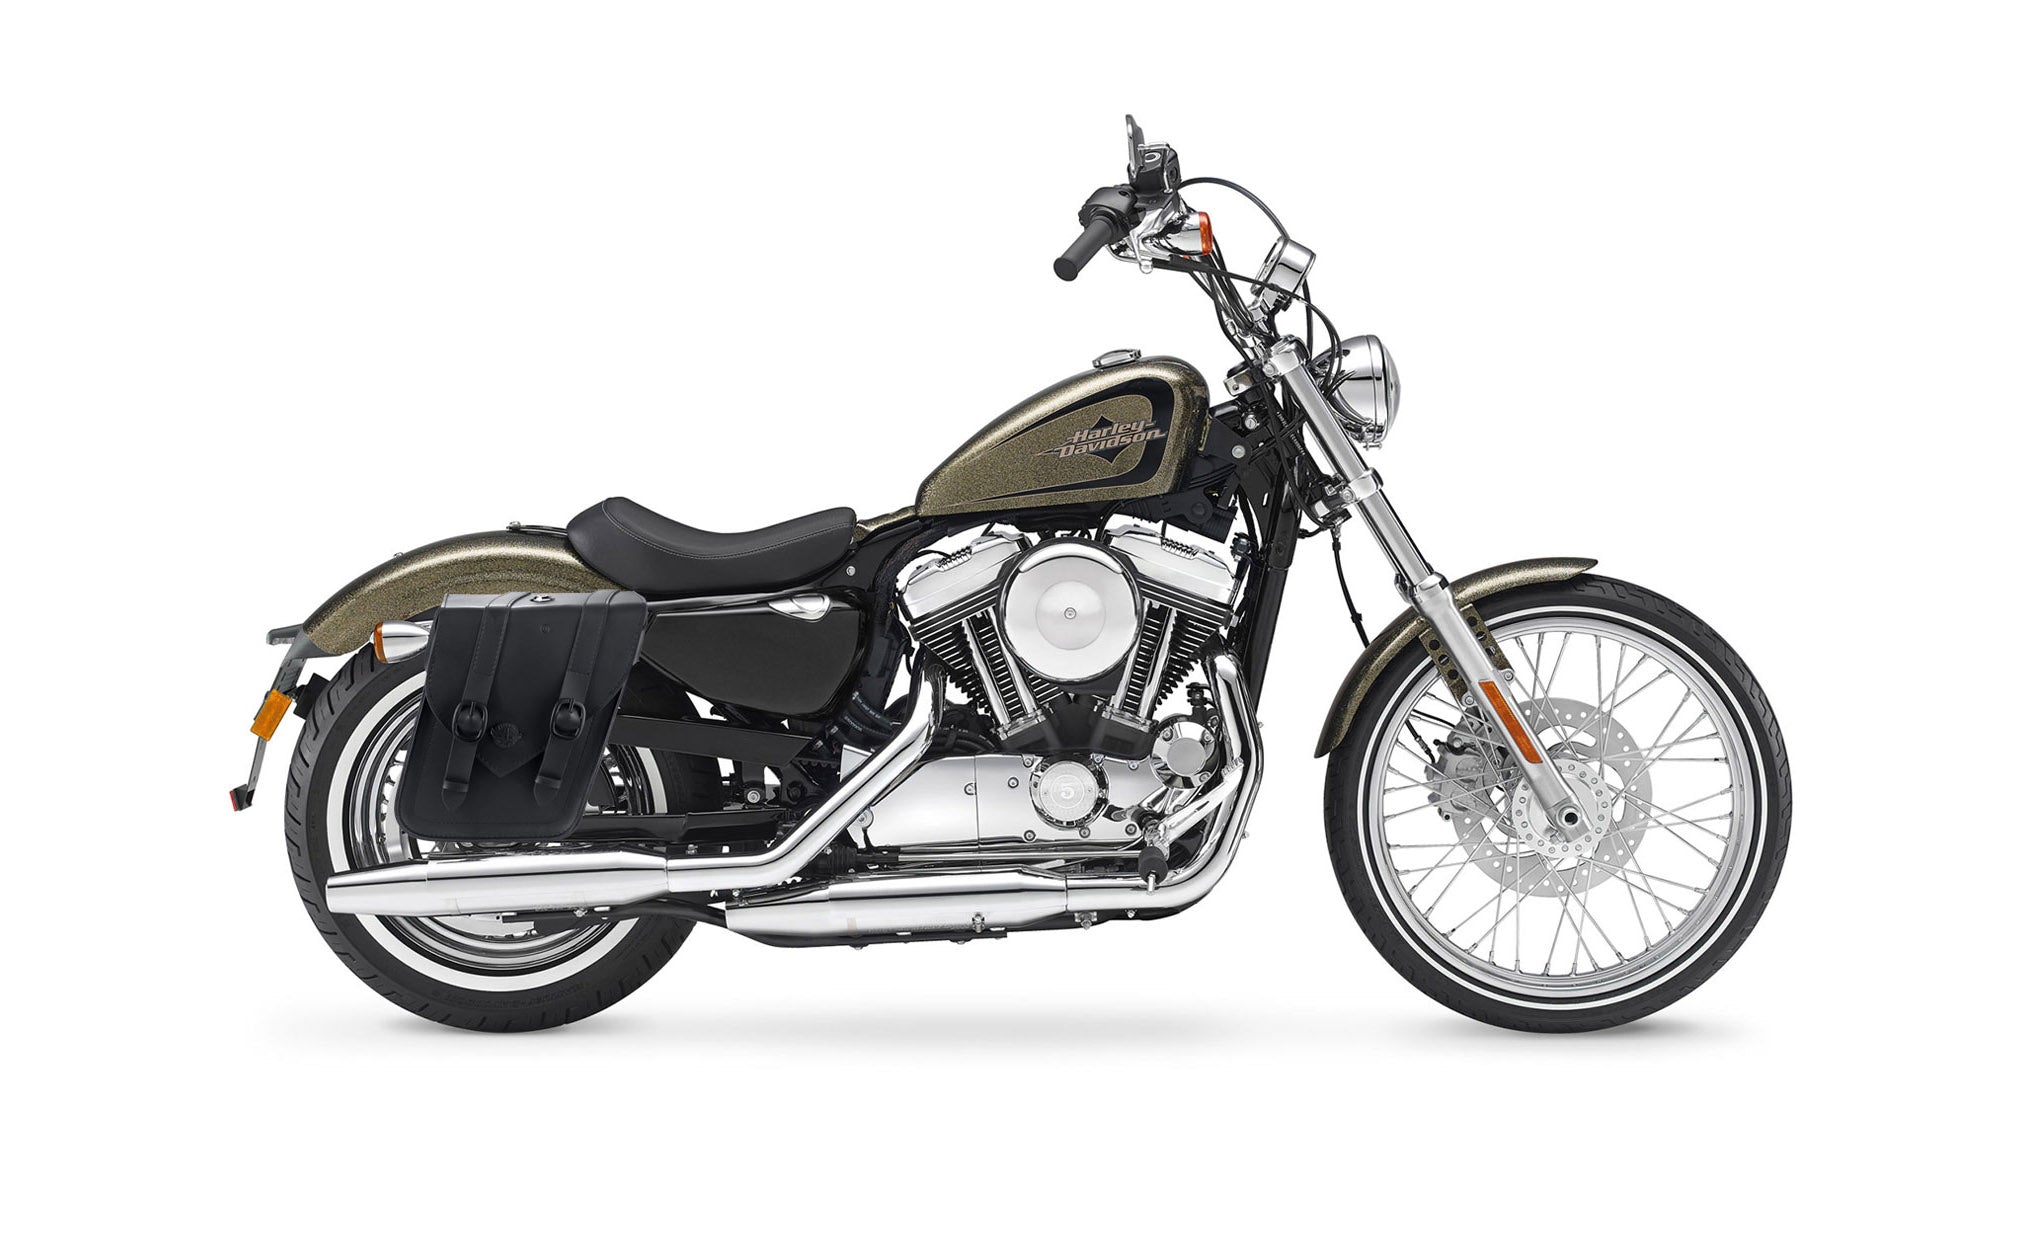 Viking Dark Age Medium Leather Motorcycle Saddlebags For Harley Sportster 72 Xl1200V on Bike Photo @expand